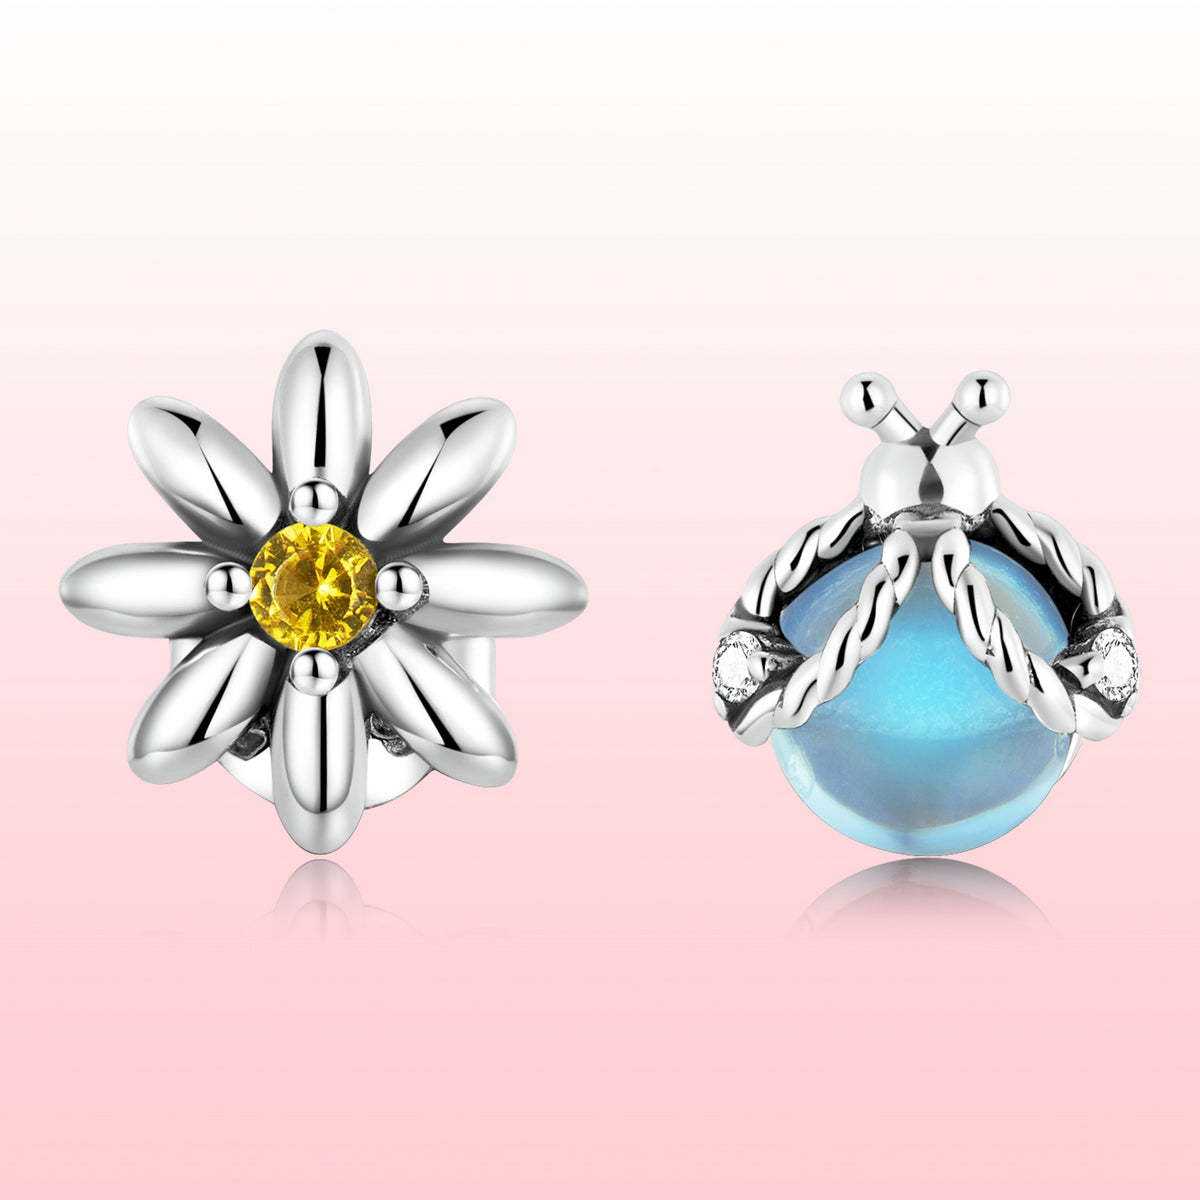 Ladybird earrings, 92.5% Sterling Silver, Daisy ear stud